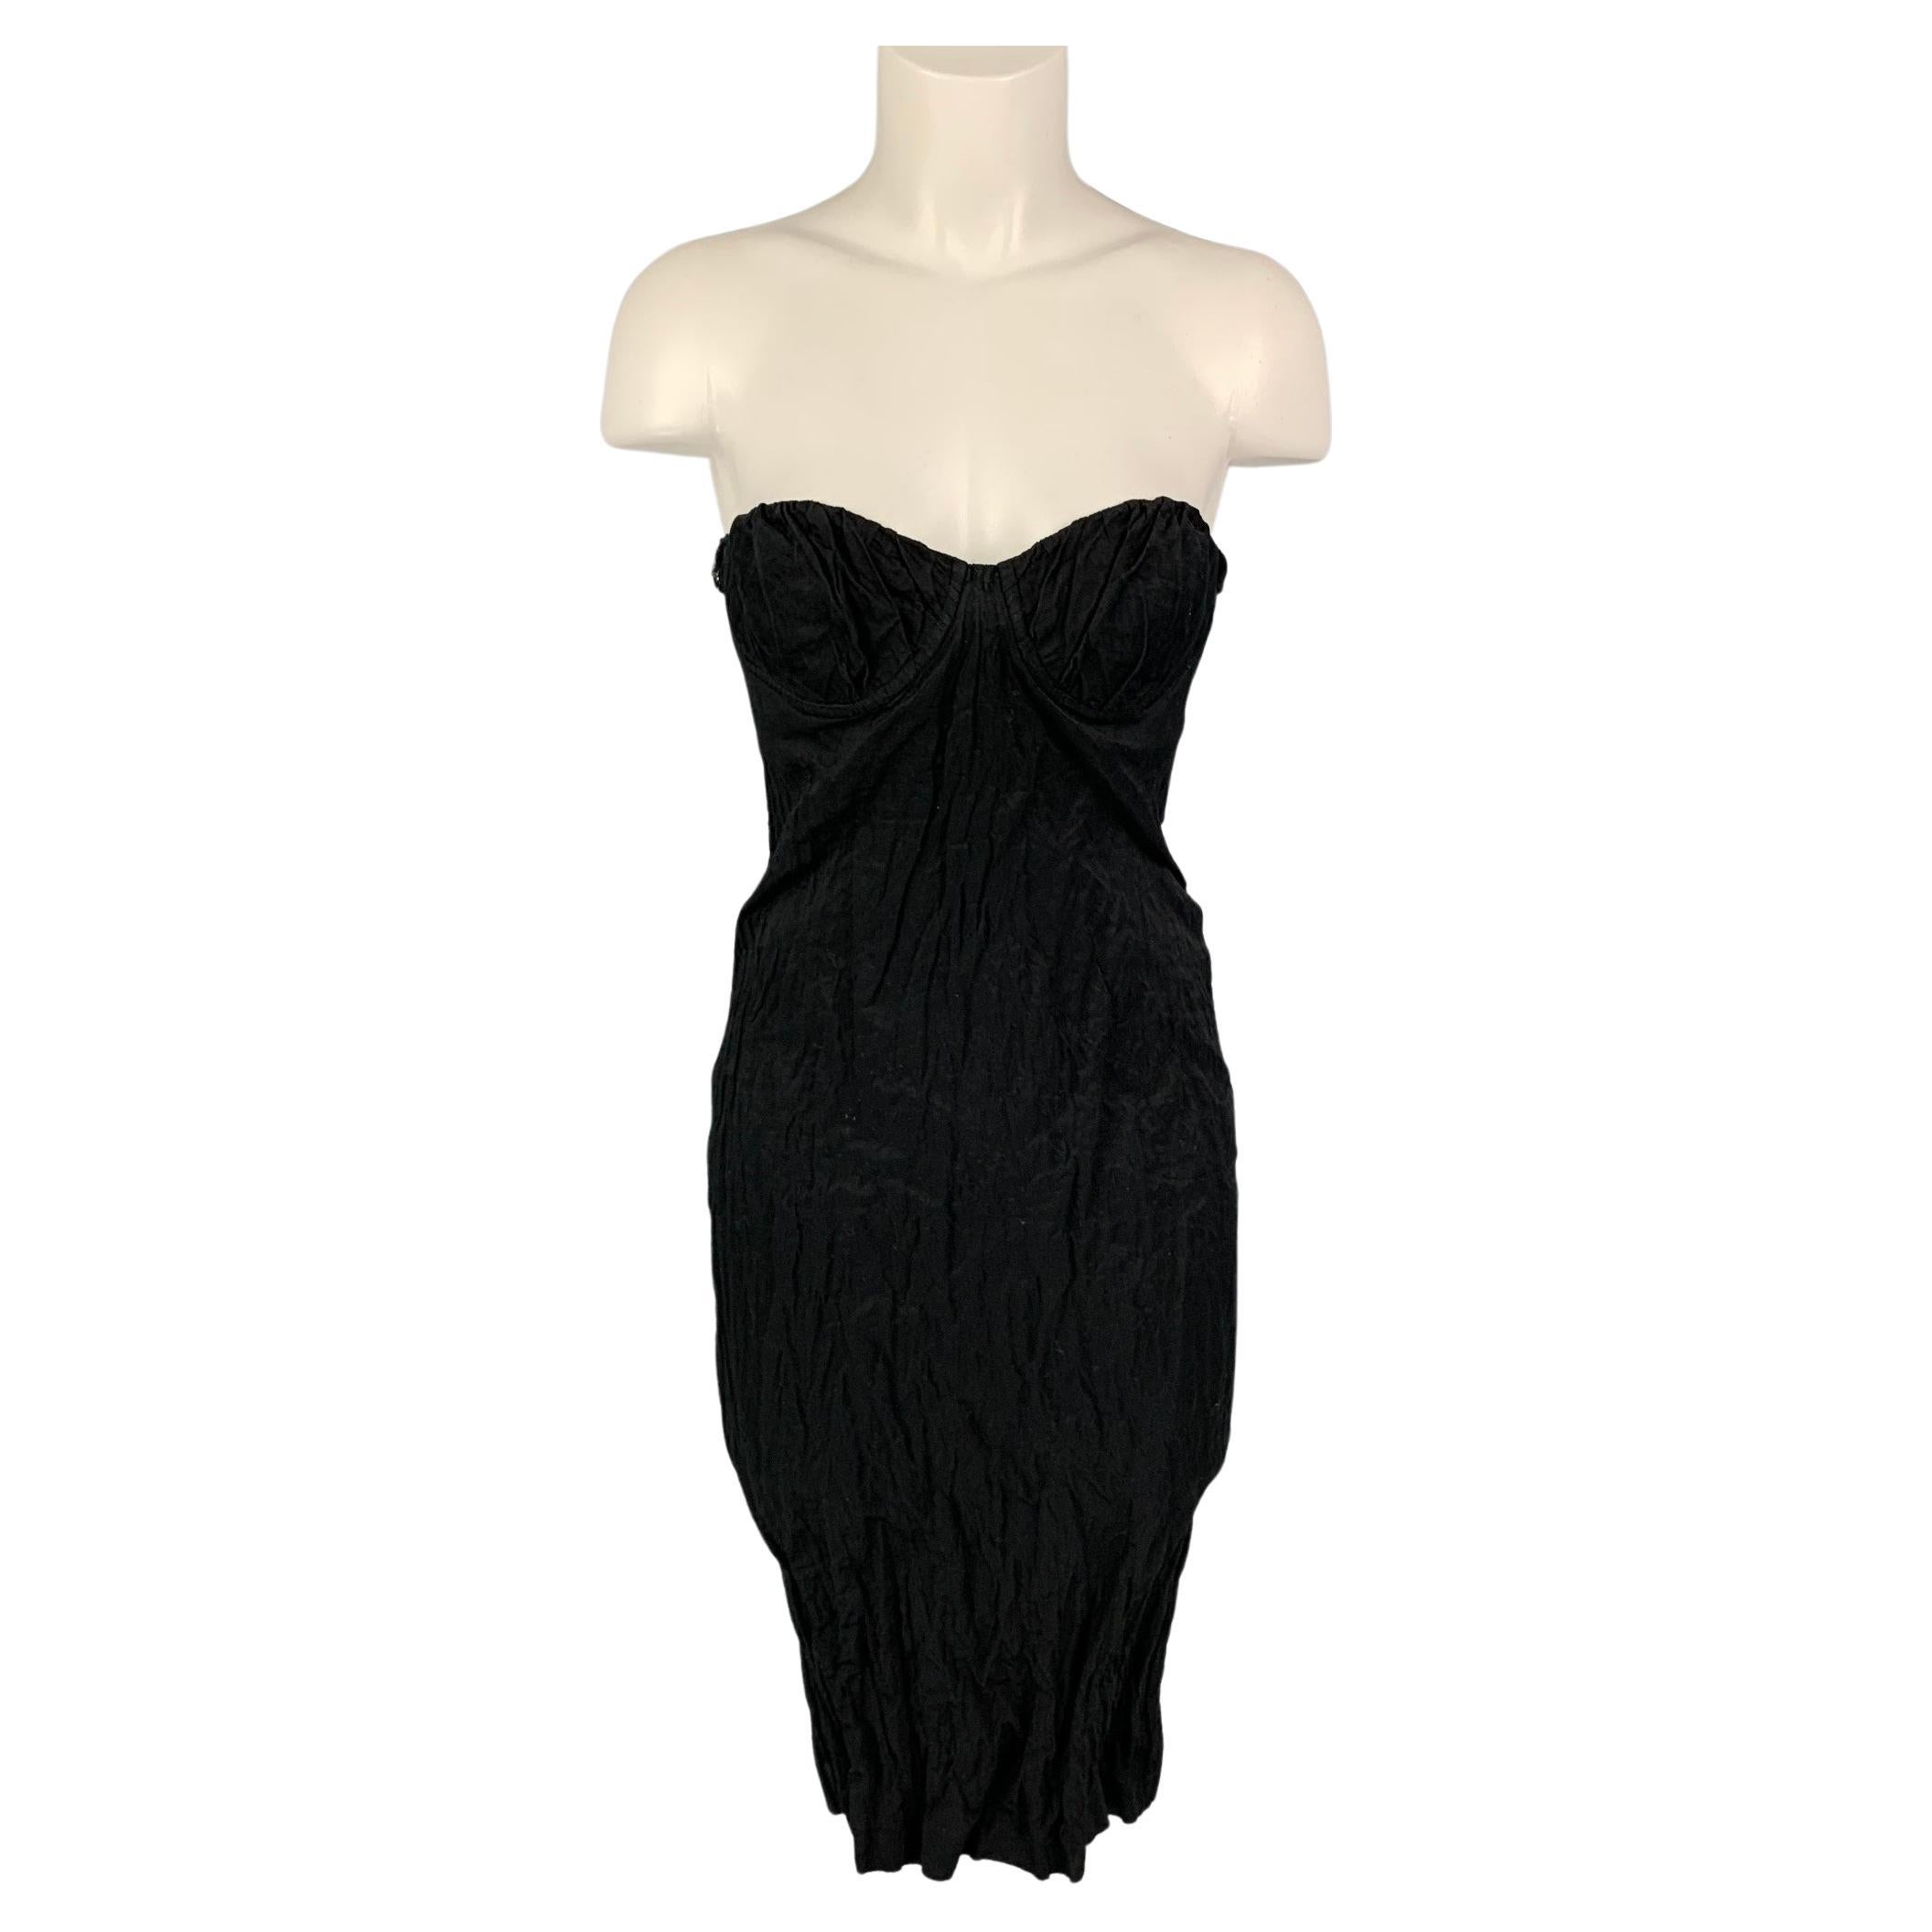 PRADA 2008 Size 6 Black Cotton Blend Wrinkled Halter Cocktail Dress at ...